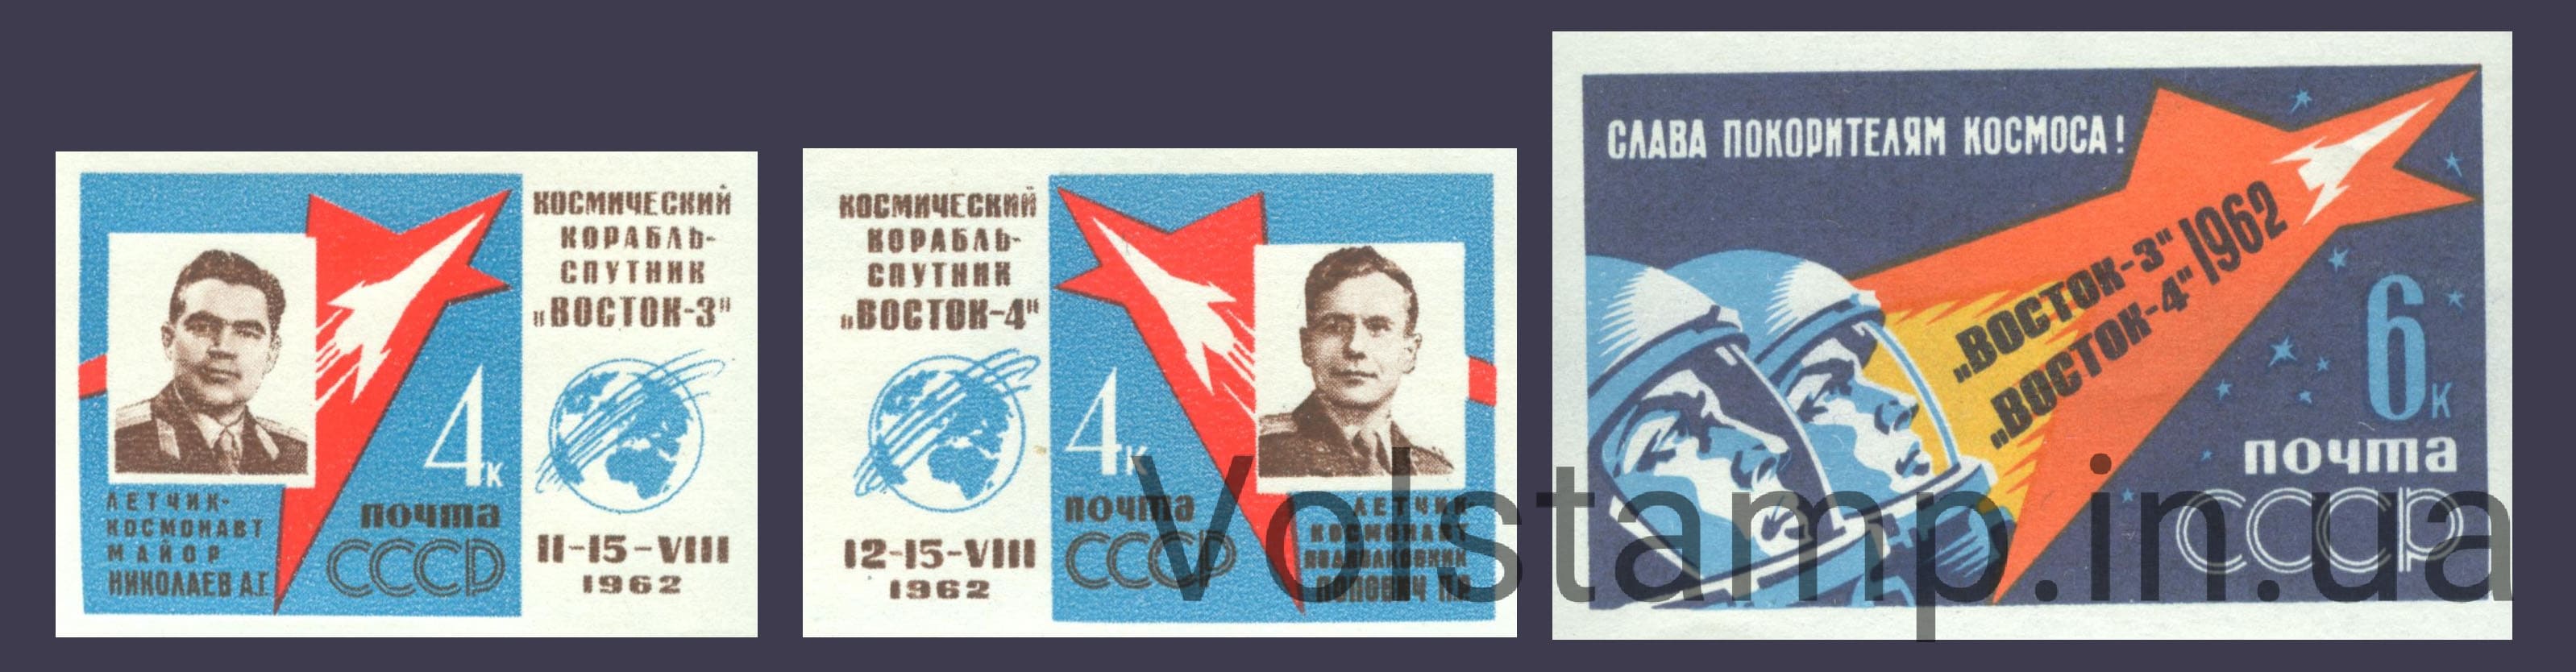 1962 серия марок Первый в мире групповой полет на космических кораблях Восток-3 и Восток-4 (Без перфорации) №2636-2638